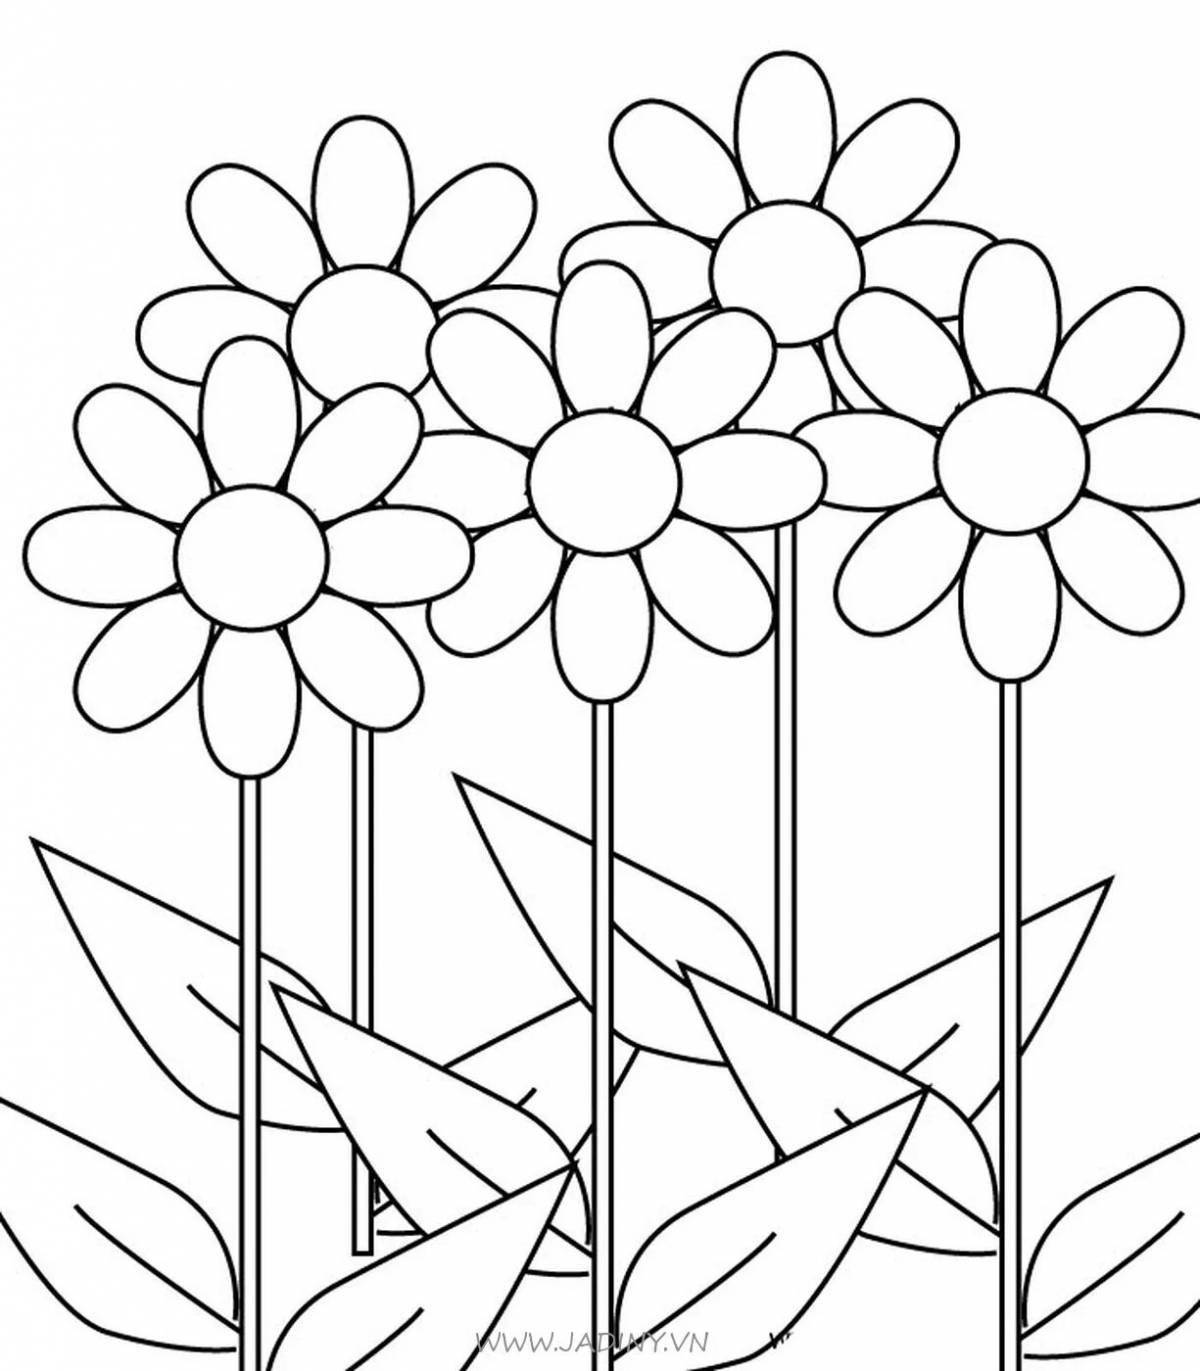 Раскраски Букет цветов - Скачать и распечатать | WONDER DAY — Раскраски для детей и взрослых